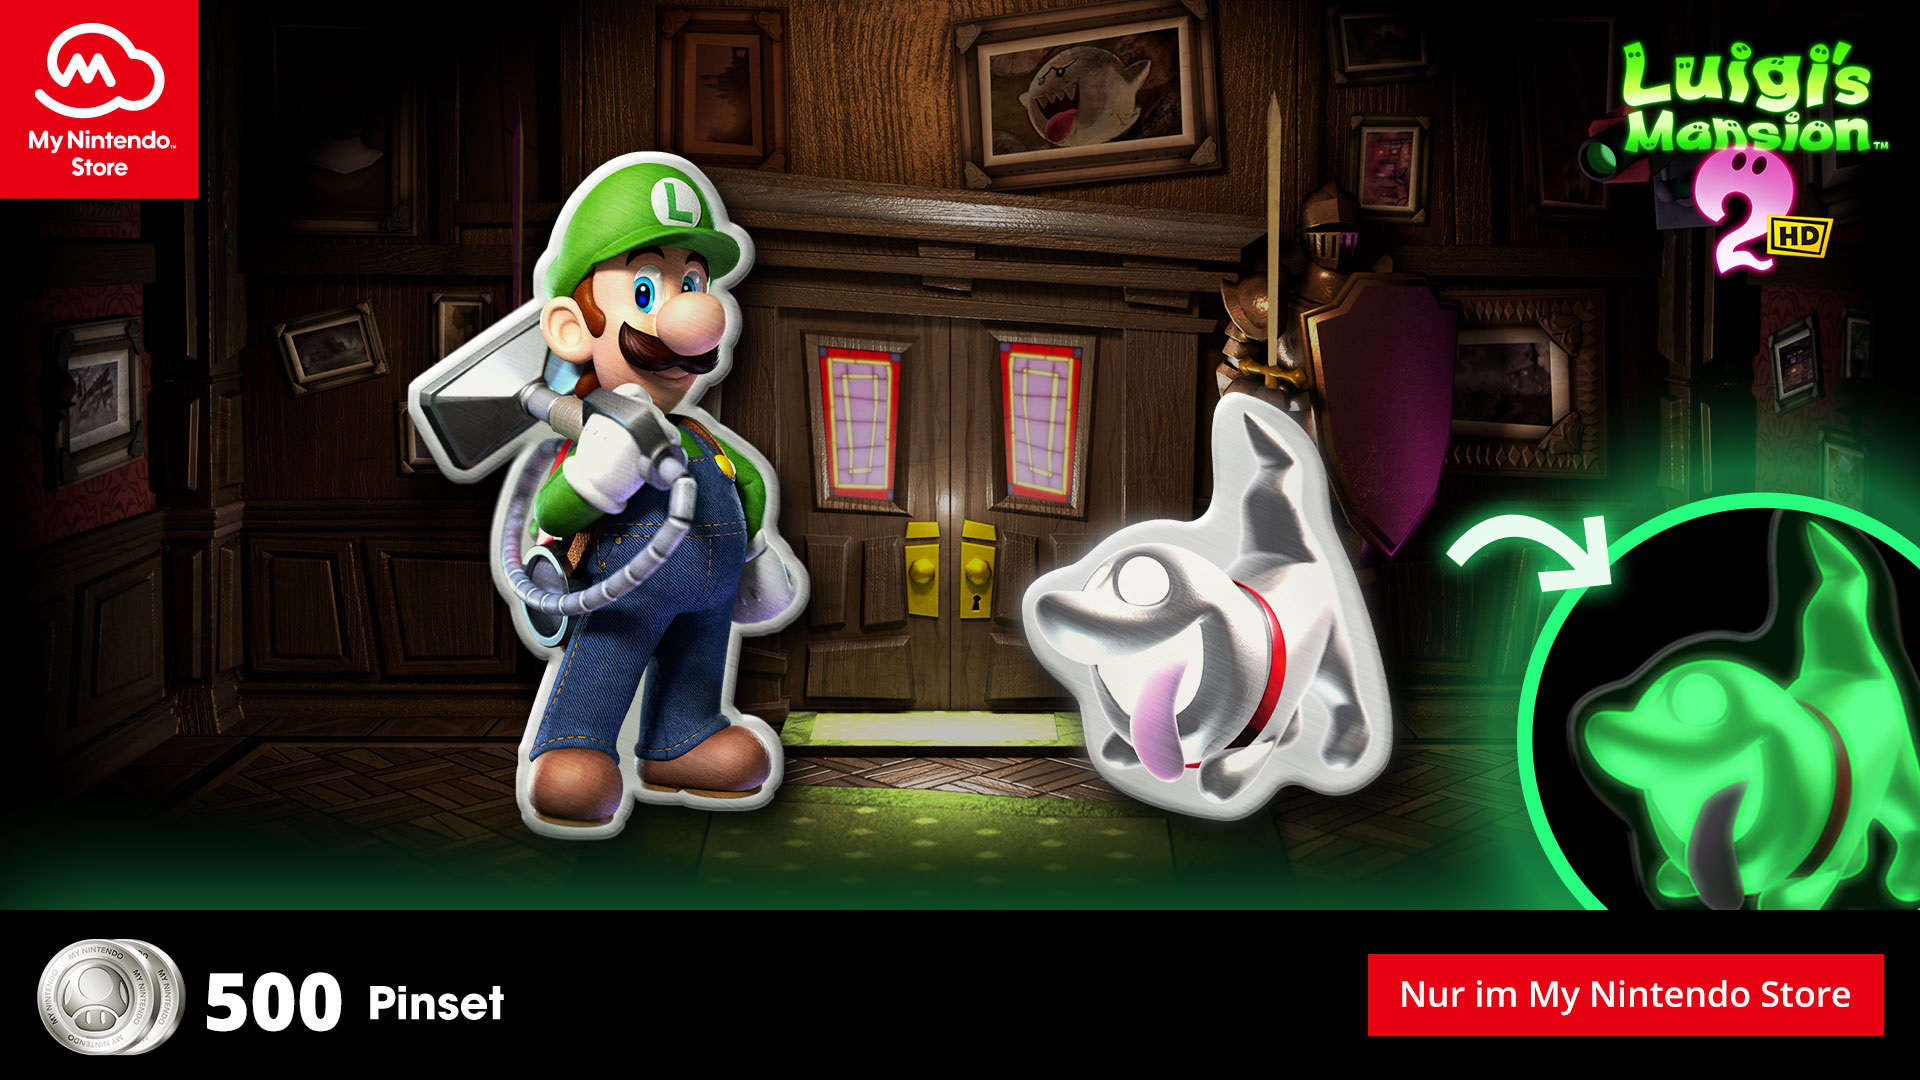 Nintendo: Luigi's Mansion 2 HD Pin-Set als neue Belohnung verfügbar